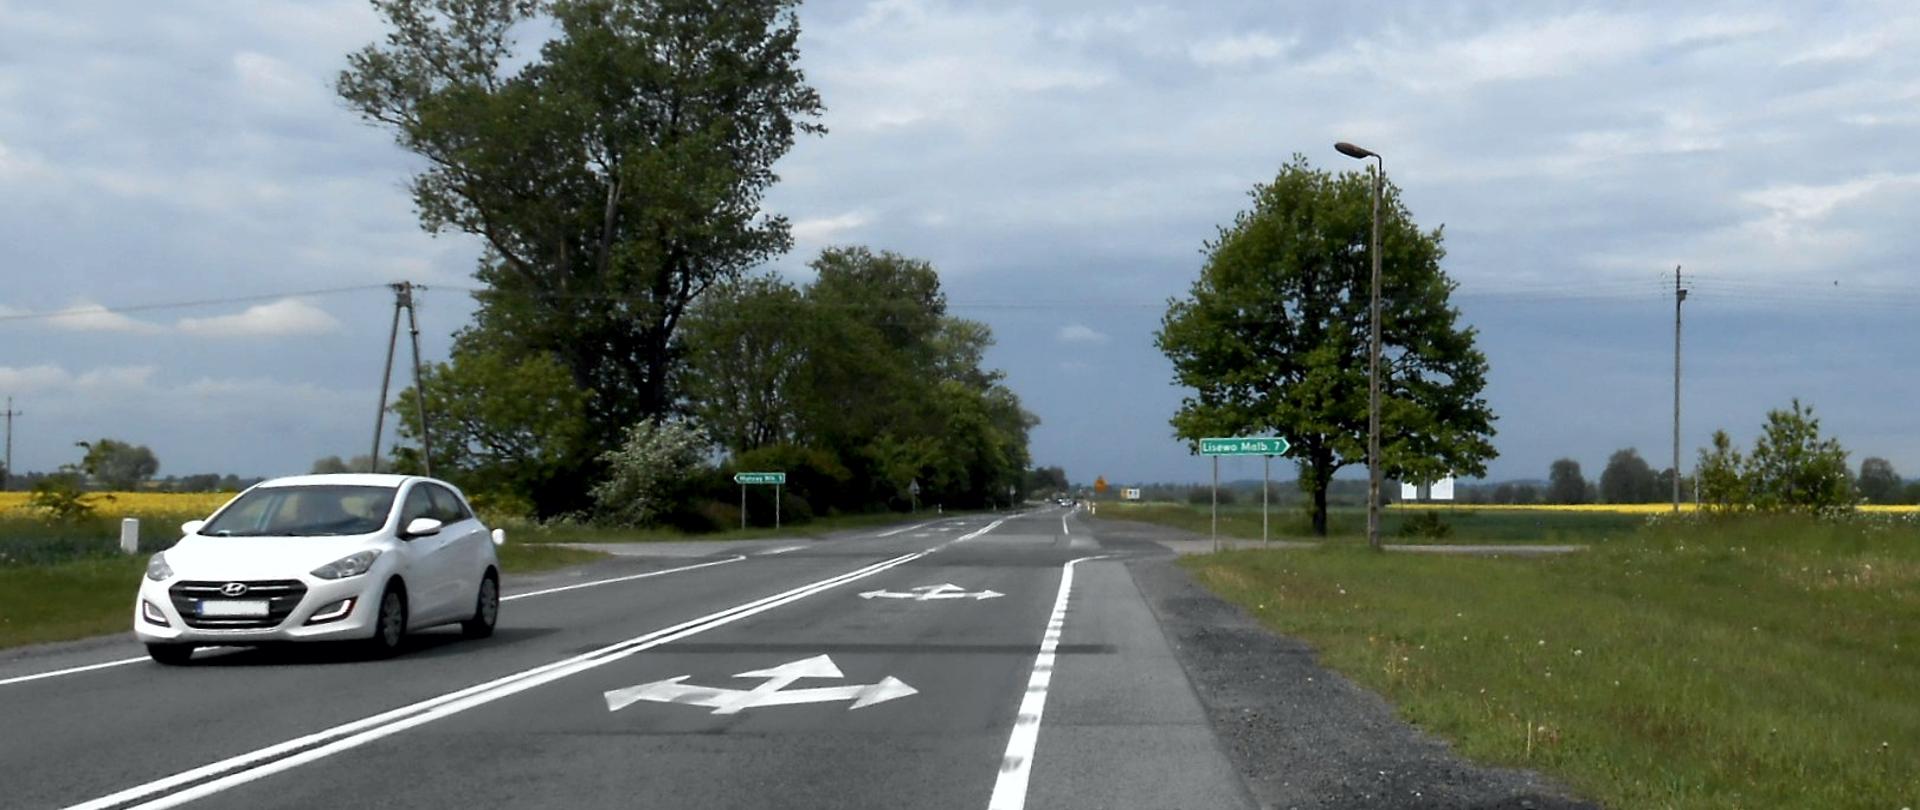 Droga krajowa nr 22 w okolicy Kończewic. Na zdjęciu widać skrzyżowanie z drogą do Lisewa z jadącym samochodem. Po obu stronach drogi krajobraz rolniczy z polami uprawnymi i przydrożnymi drzewami.